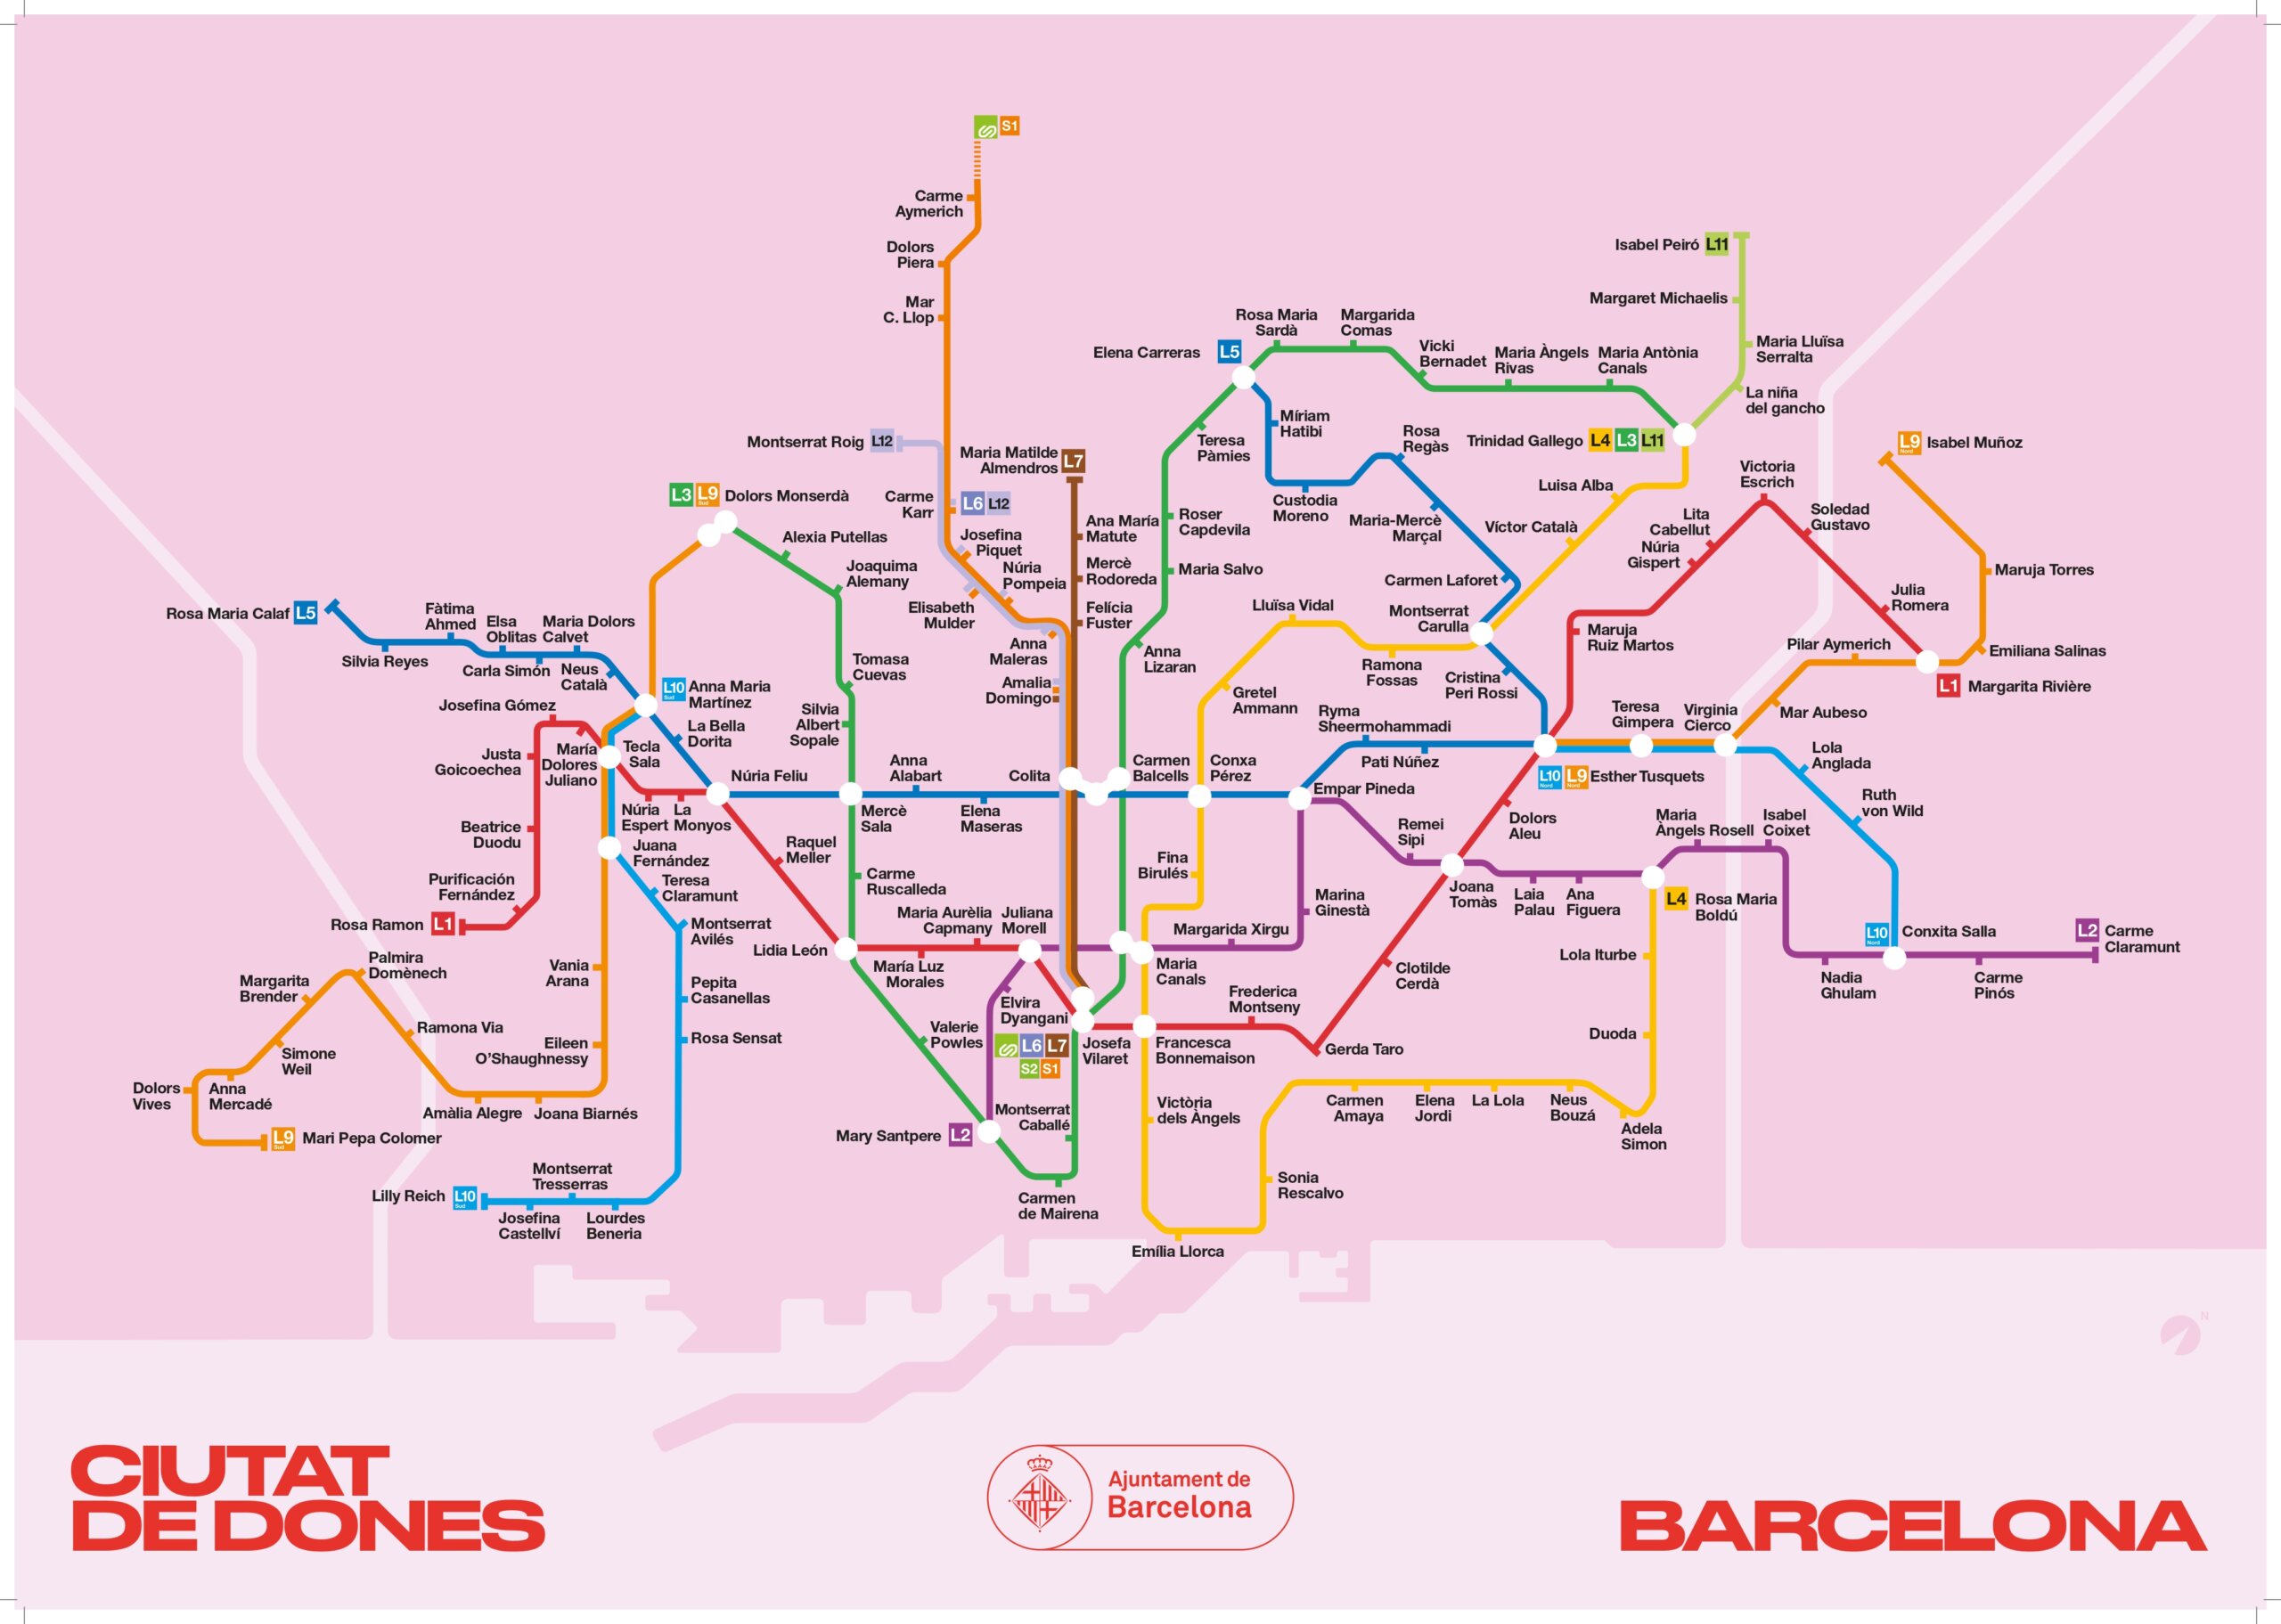 qué mujer referente de Barcelona eres según tu parada de metro